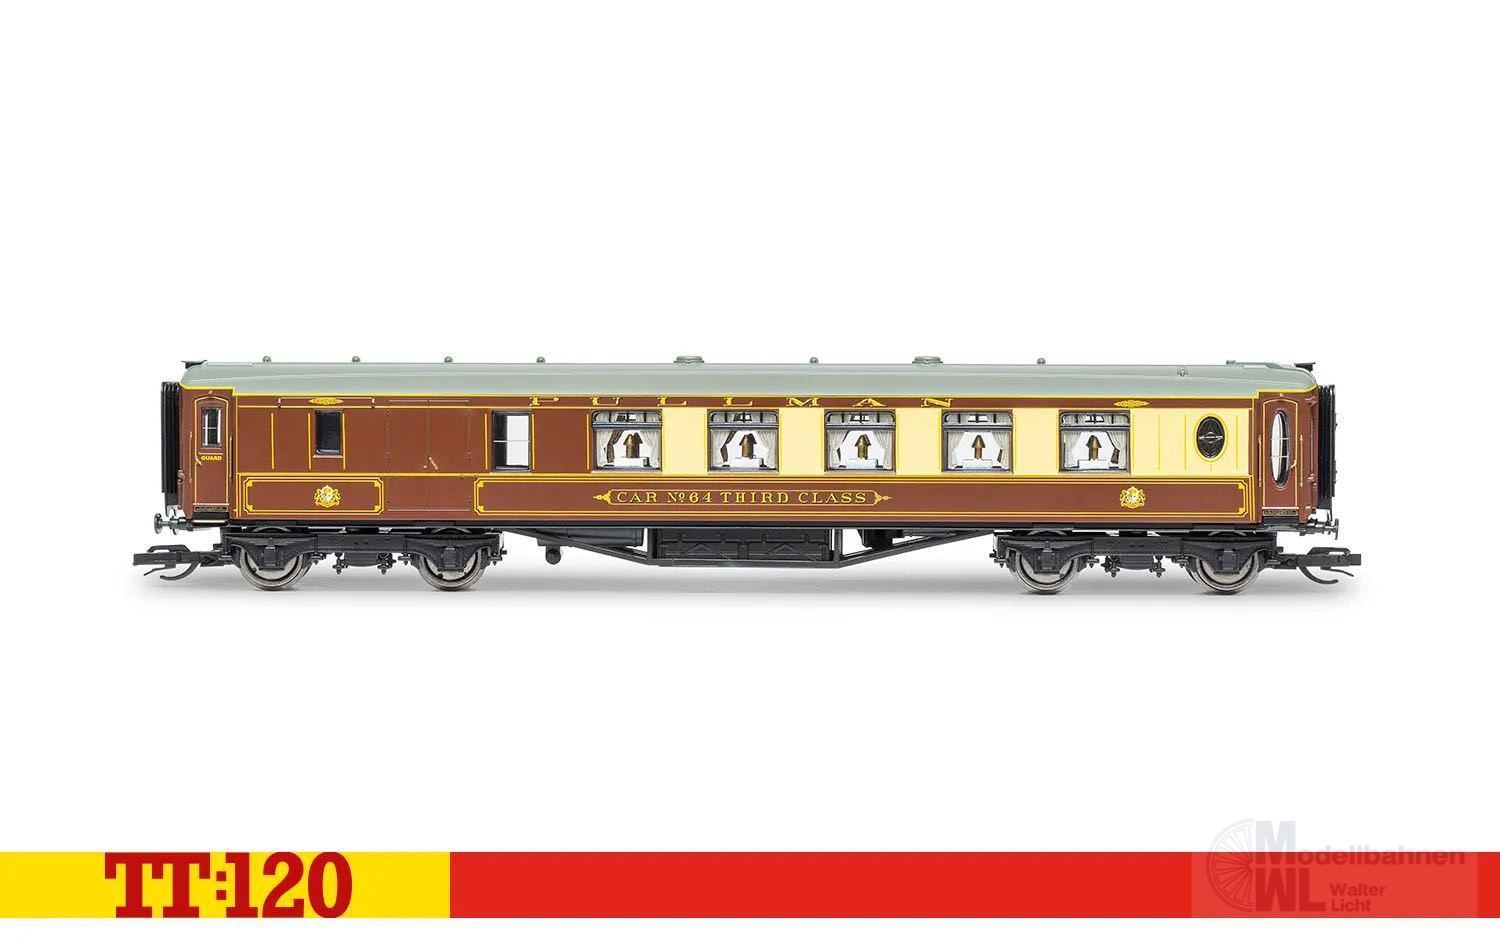 HORNBY TT TT1001AM - The Scotsman Train Set - Era 4 EU-Transformator TT 1:120